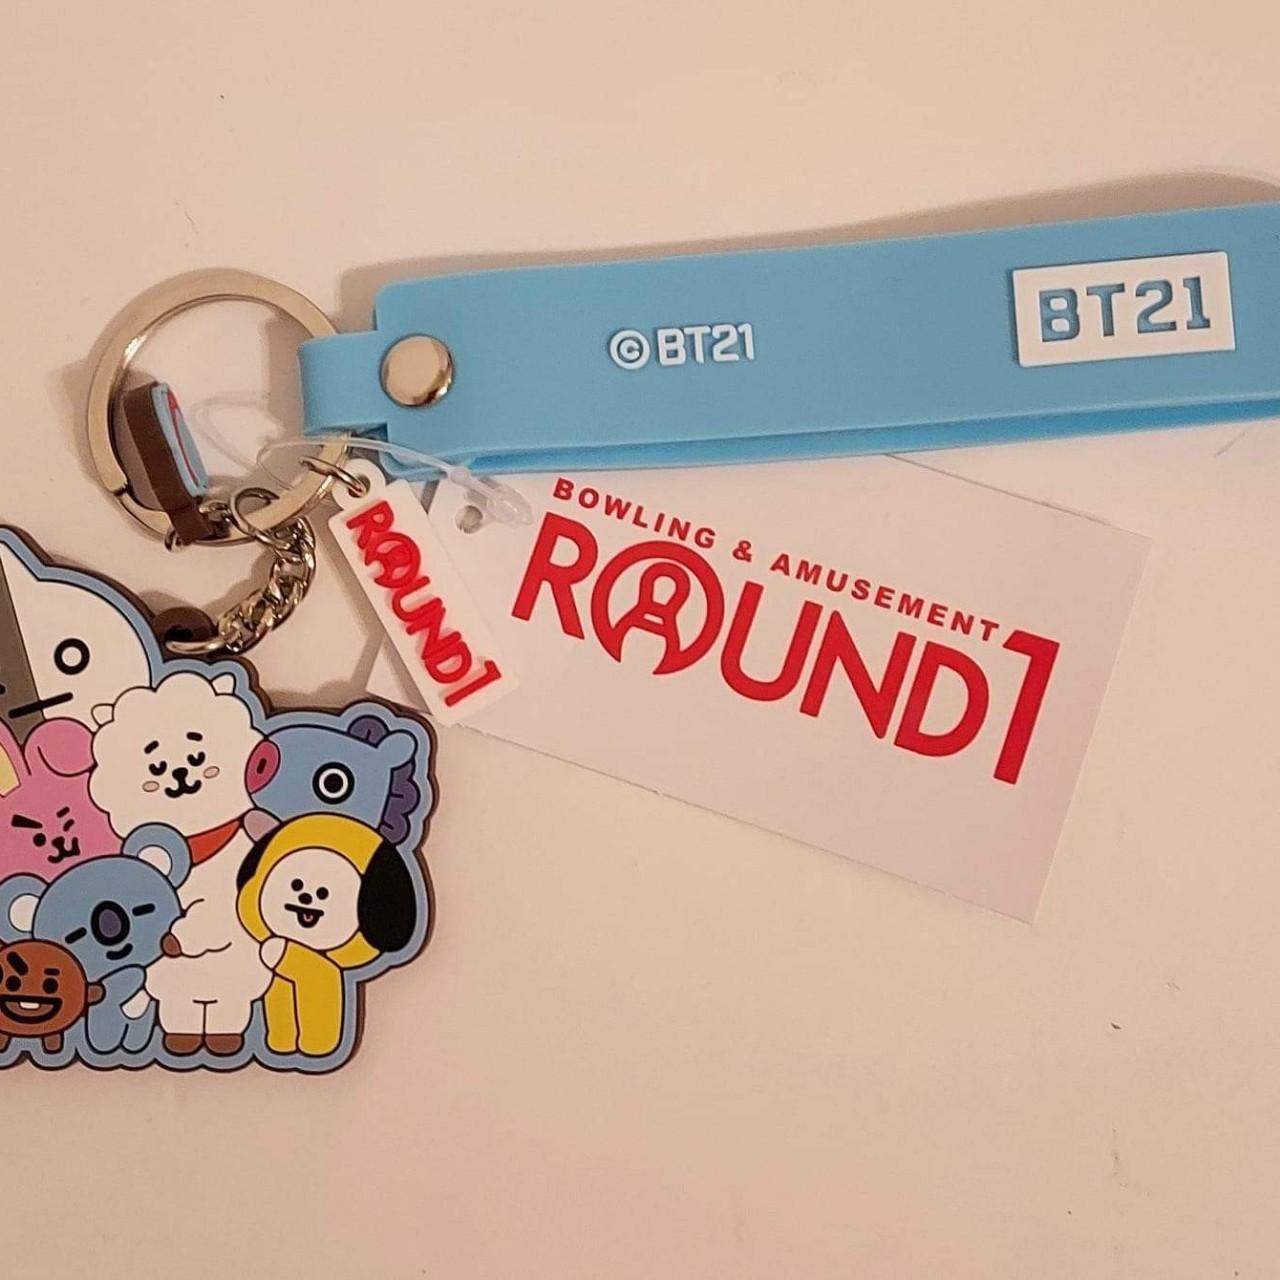 BT21 Round 1 Exclusive Keychain. New super cute